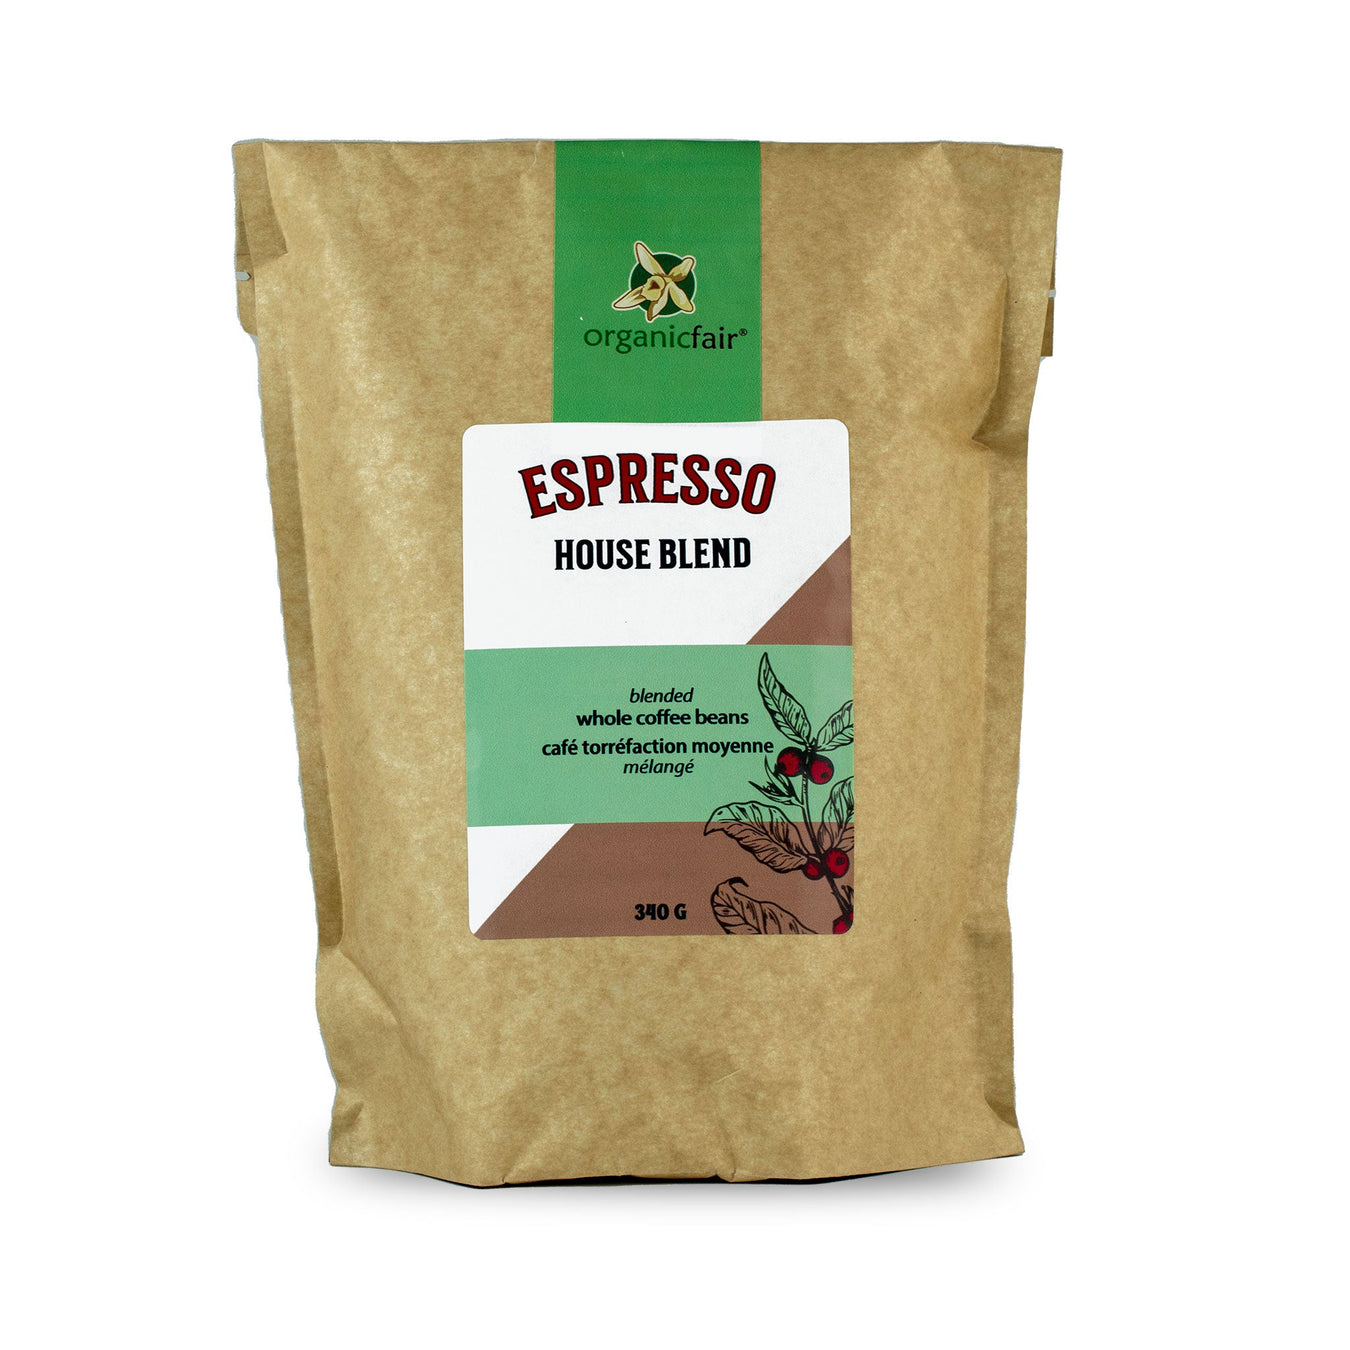 Coffee Beans - Single Origin Coffee and Espresso